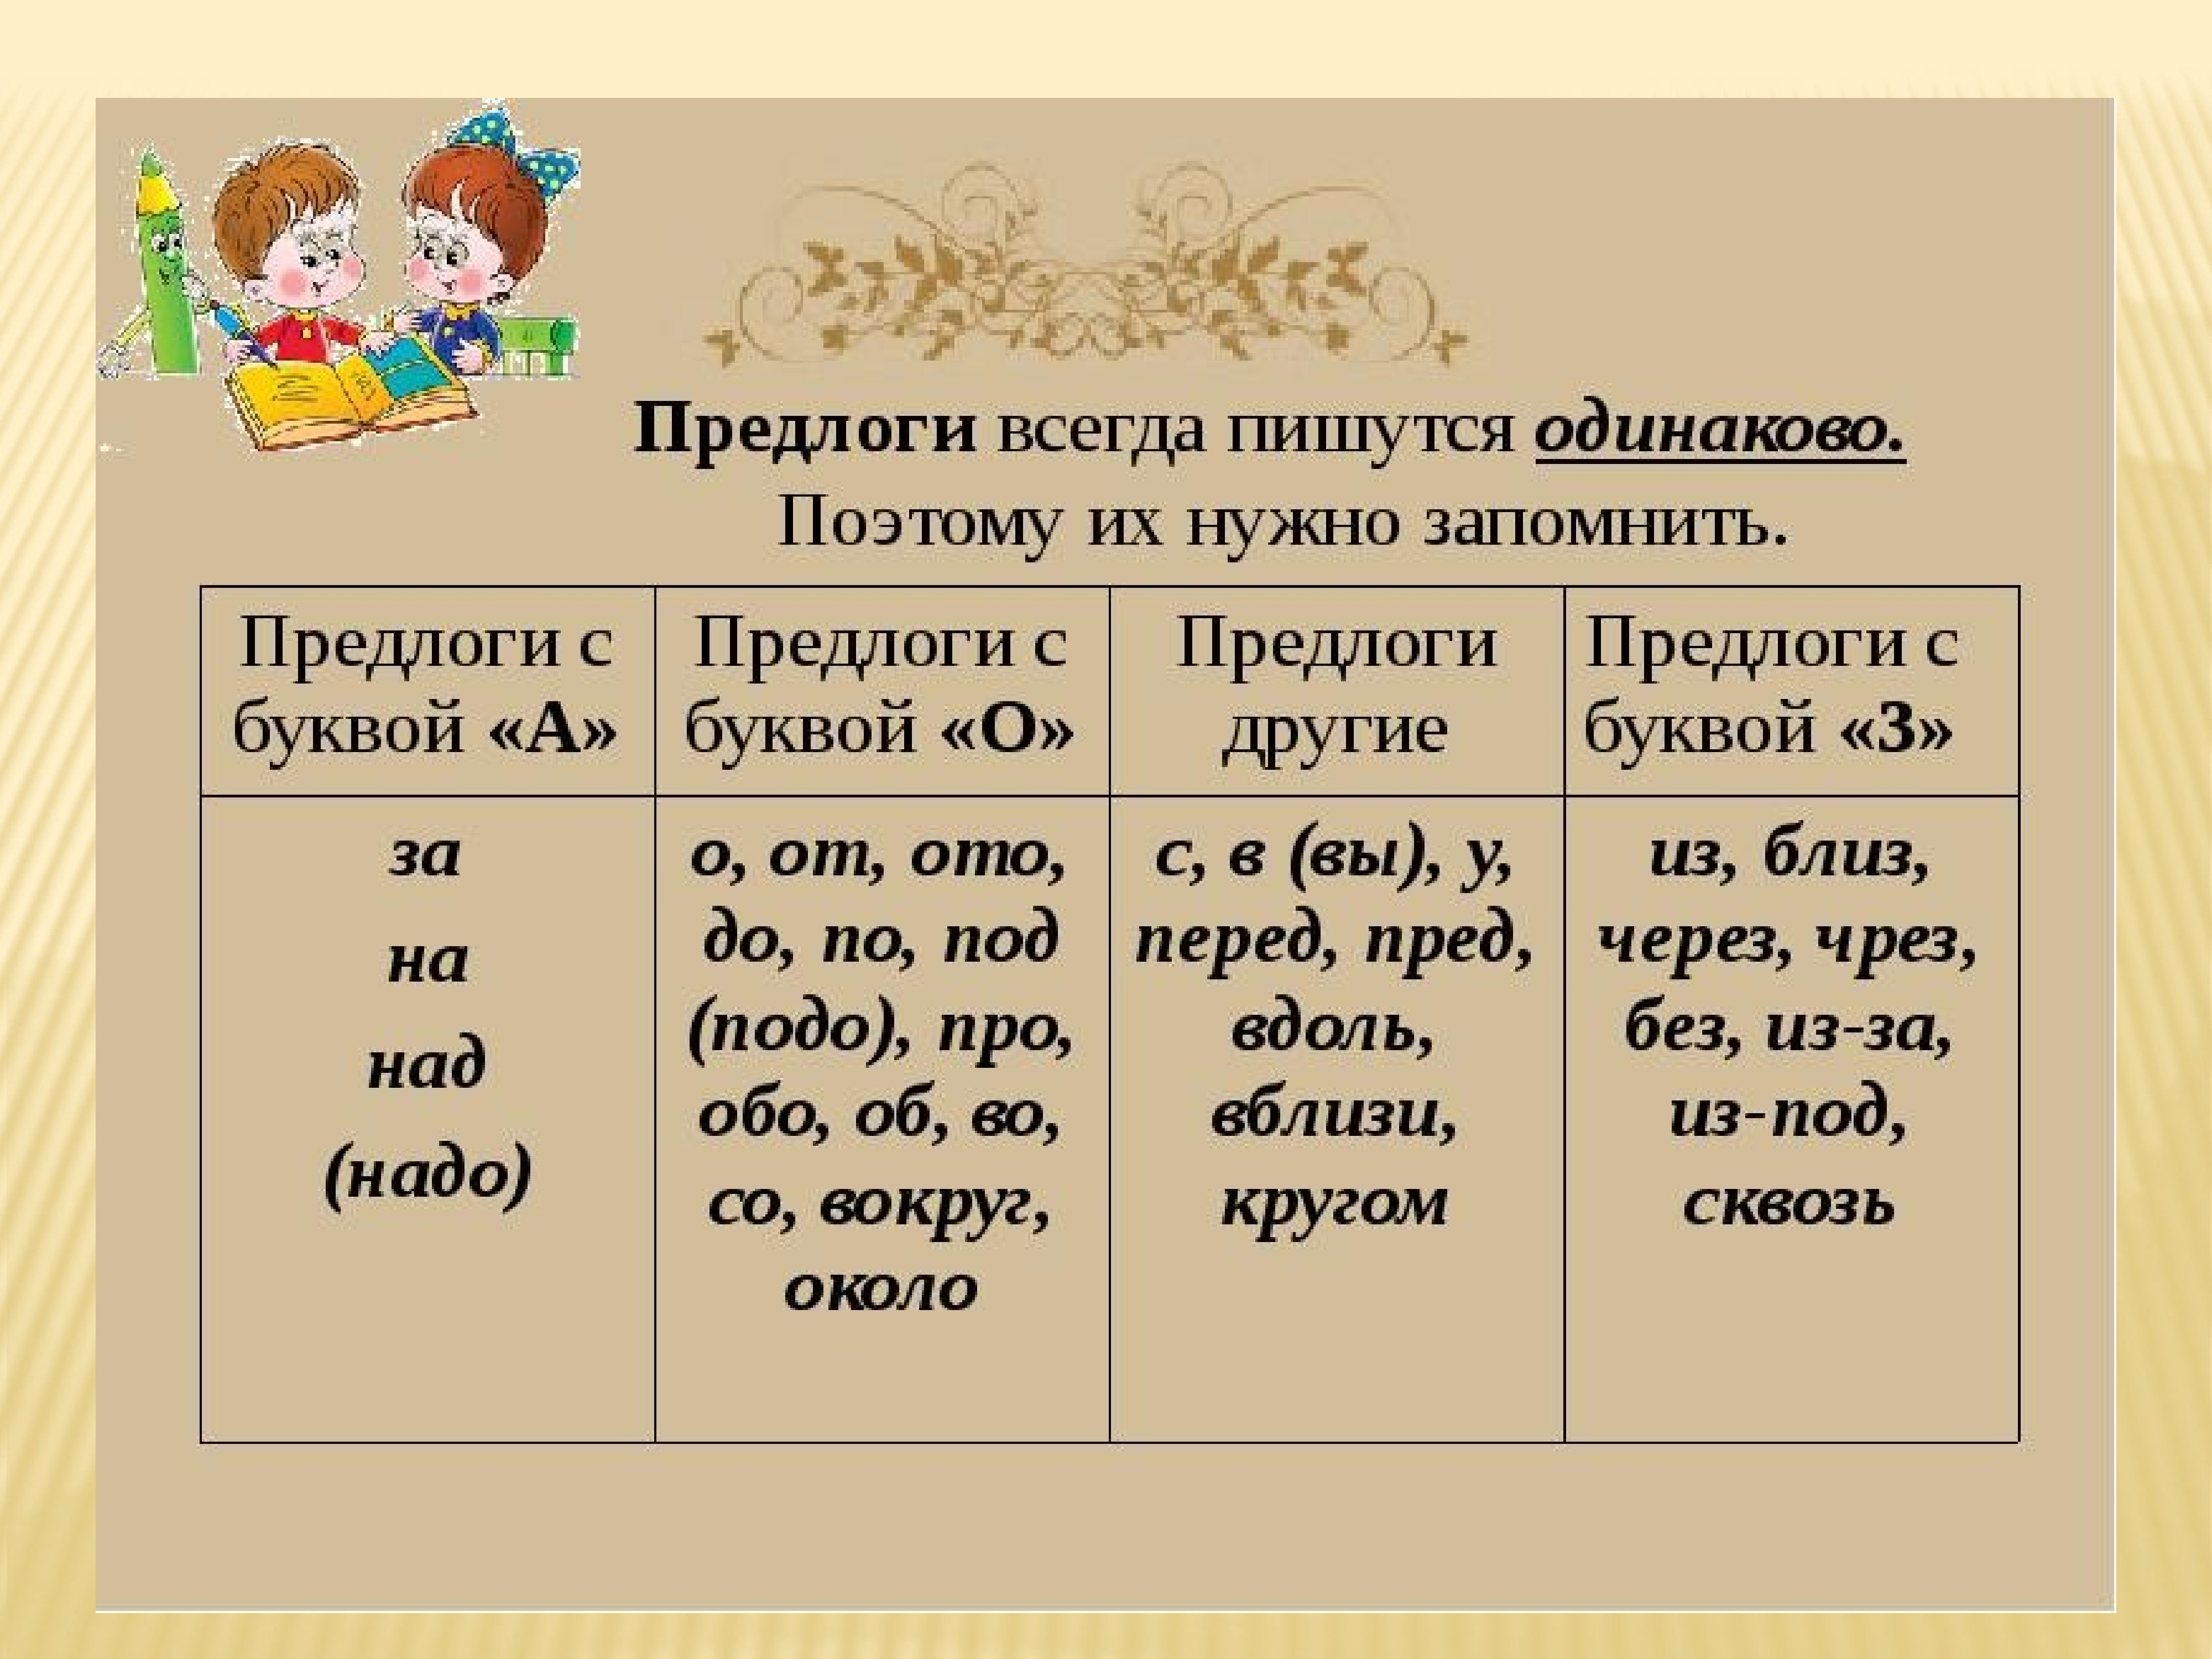 Предъявил приставка. Предлог. Предлоги в русском языке. Пердлоги в руском языке. Таблица предлогов в руском языке.